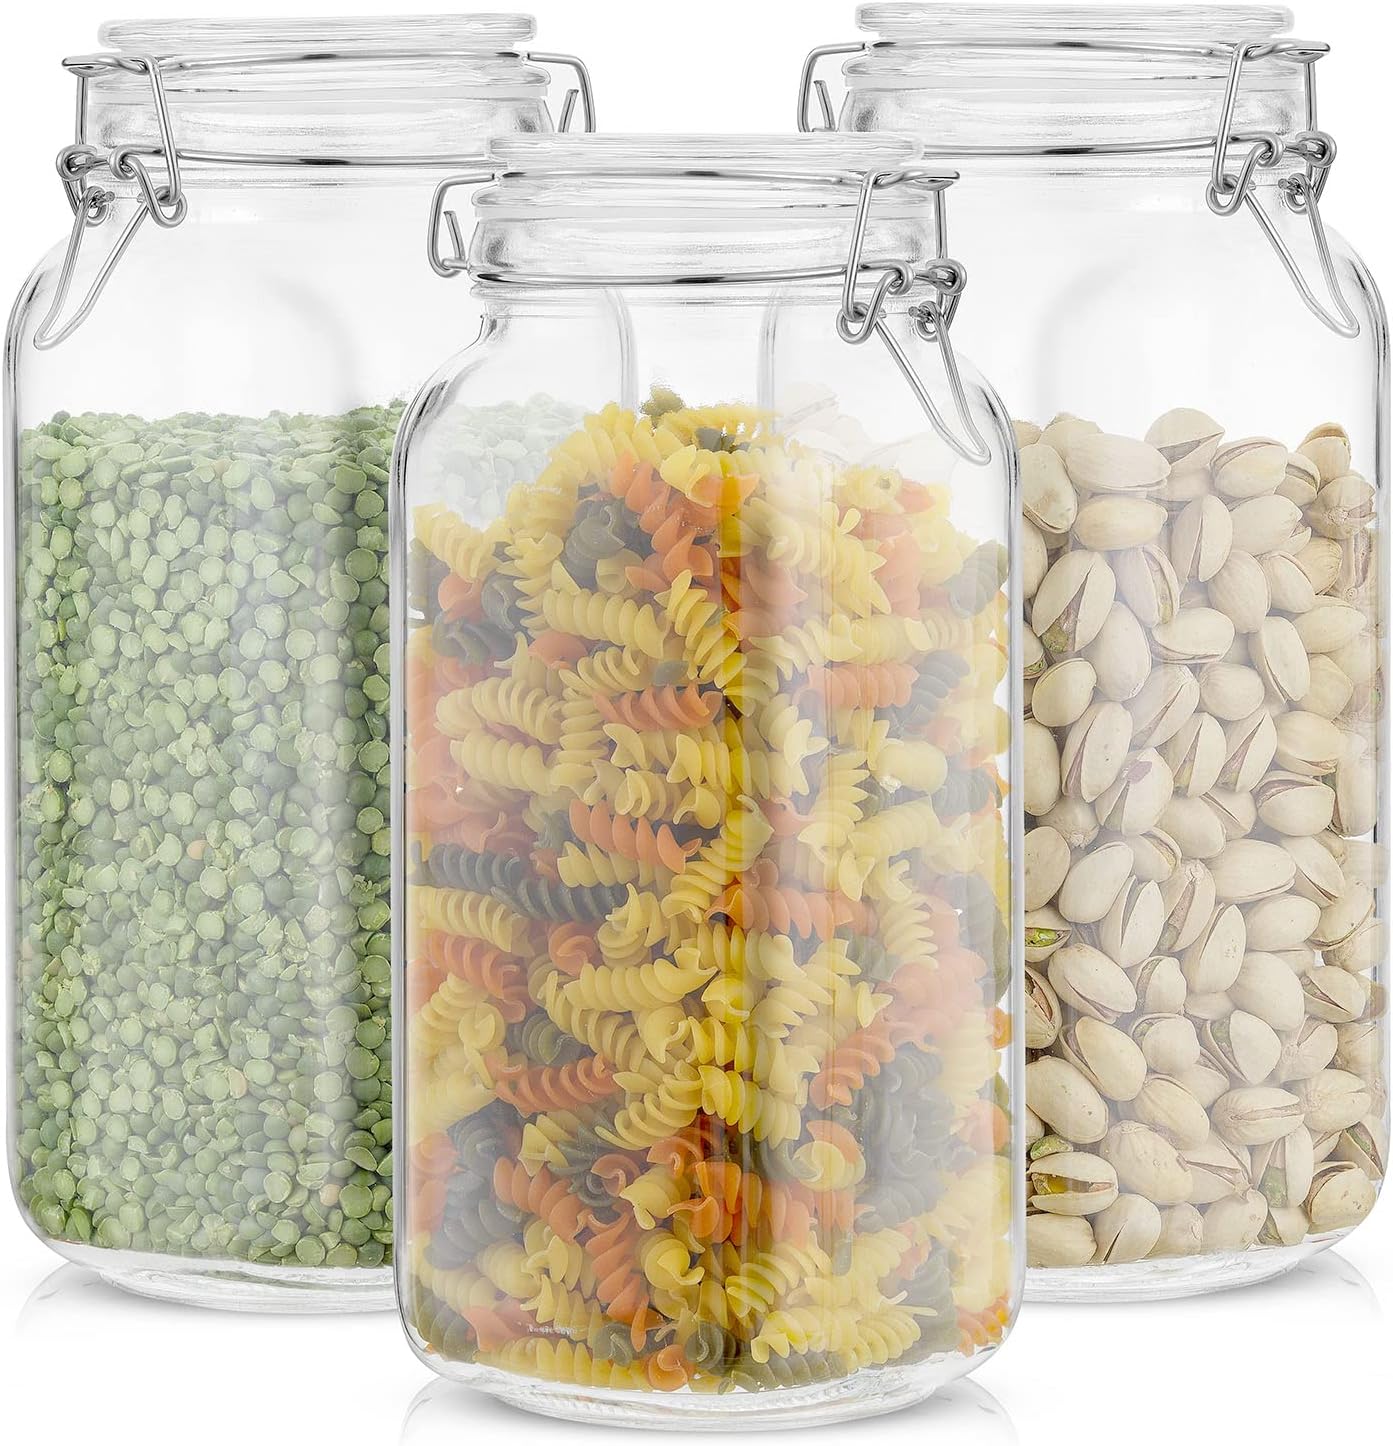 Tarros de vidrio con tapa hermética | Contenedores herméticos de vidrio  para almacenamiento de alimentos | Junta de goma transparente a prueba de